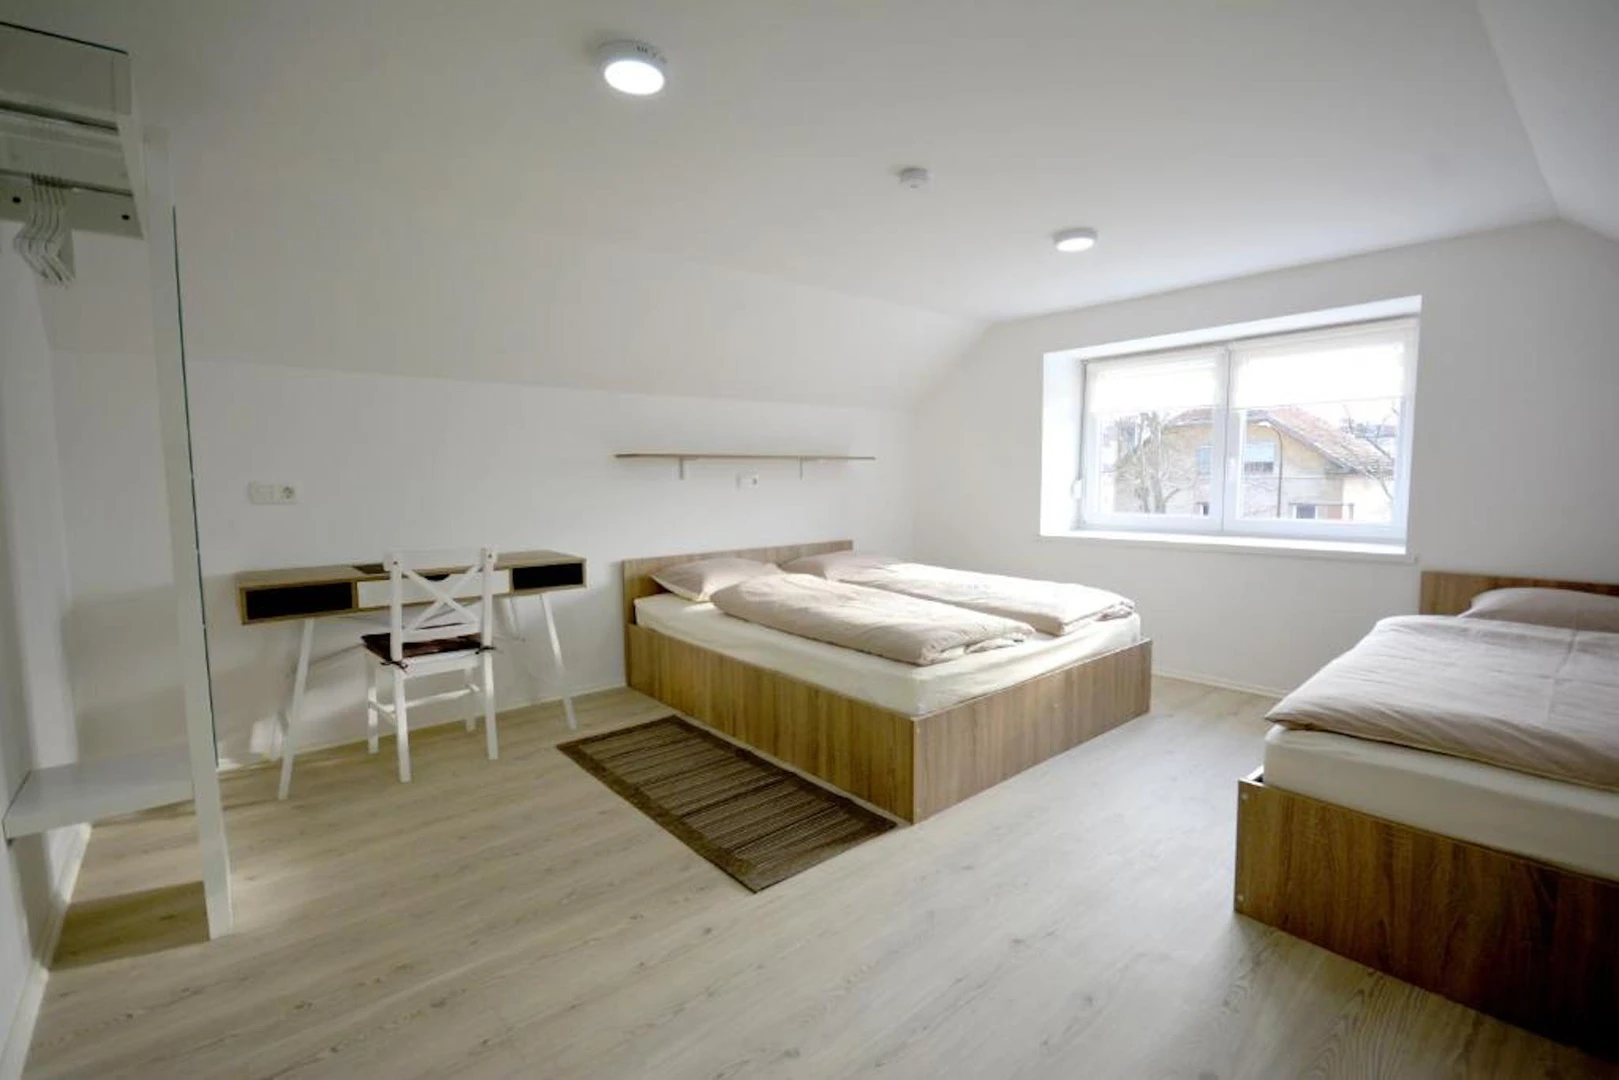 Alquiler de habitación en piso compartido en ljubljana